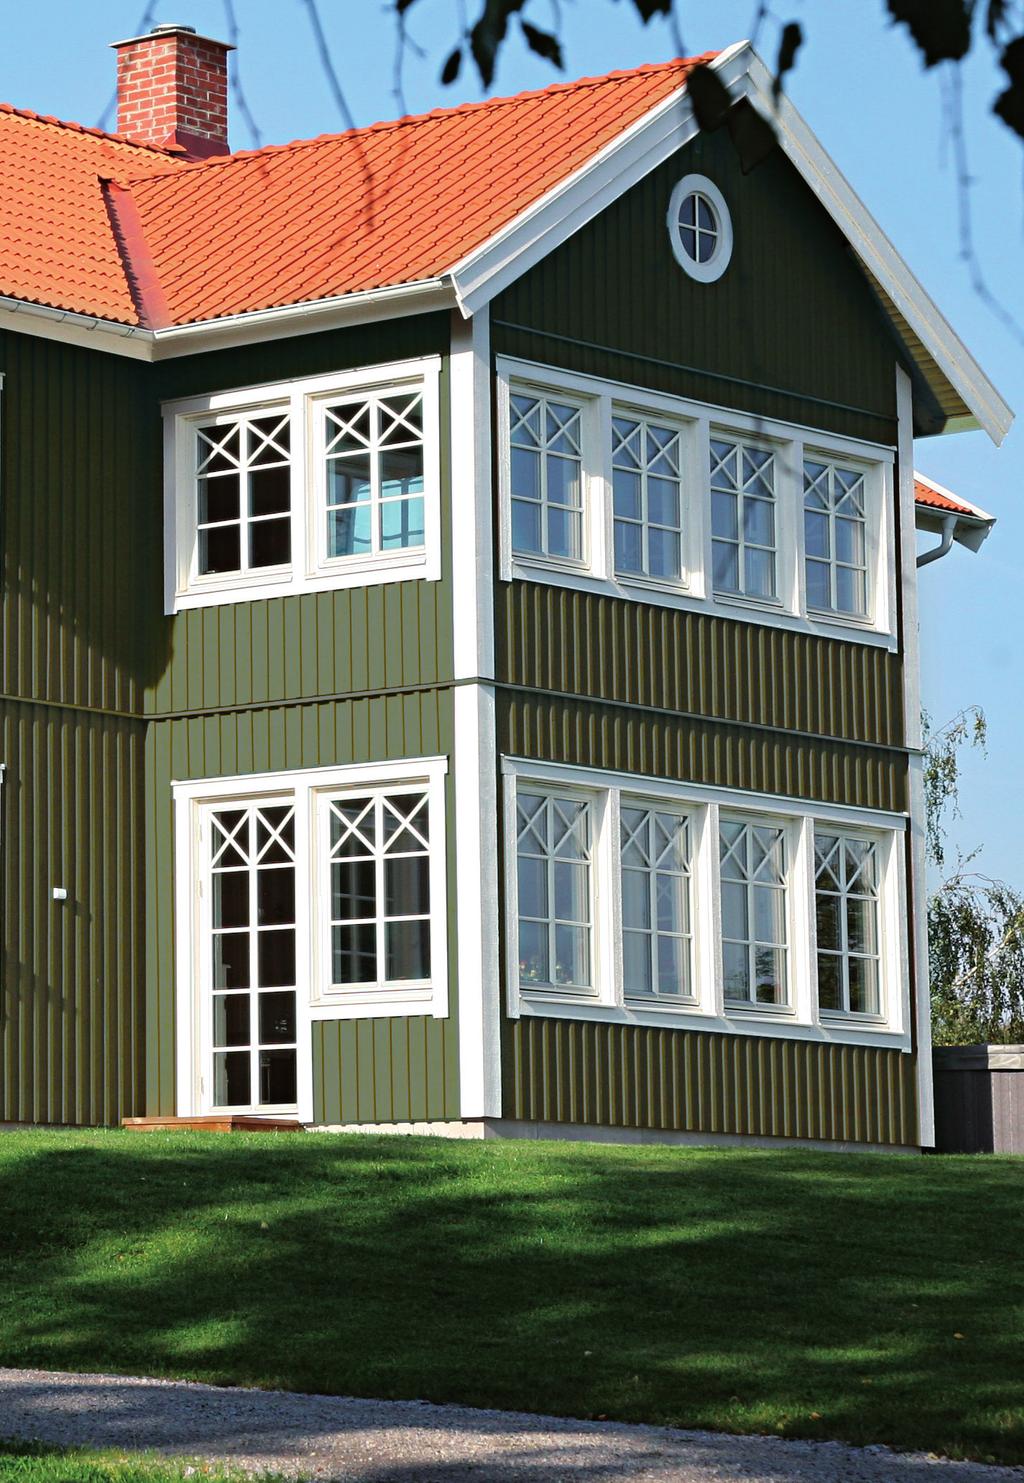 KLASSIEK WARM CLASSIQUE CHALEREUX Het rode huis met witte kozijnen is een symbool in Scandinavië.